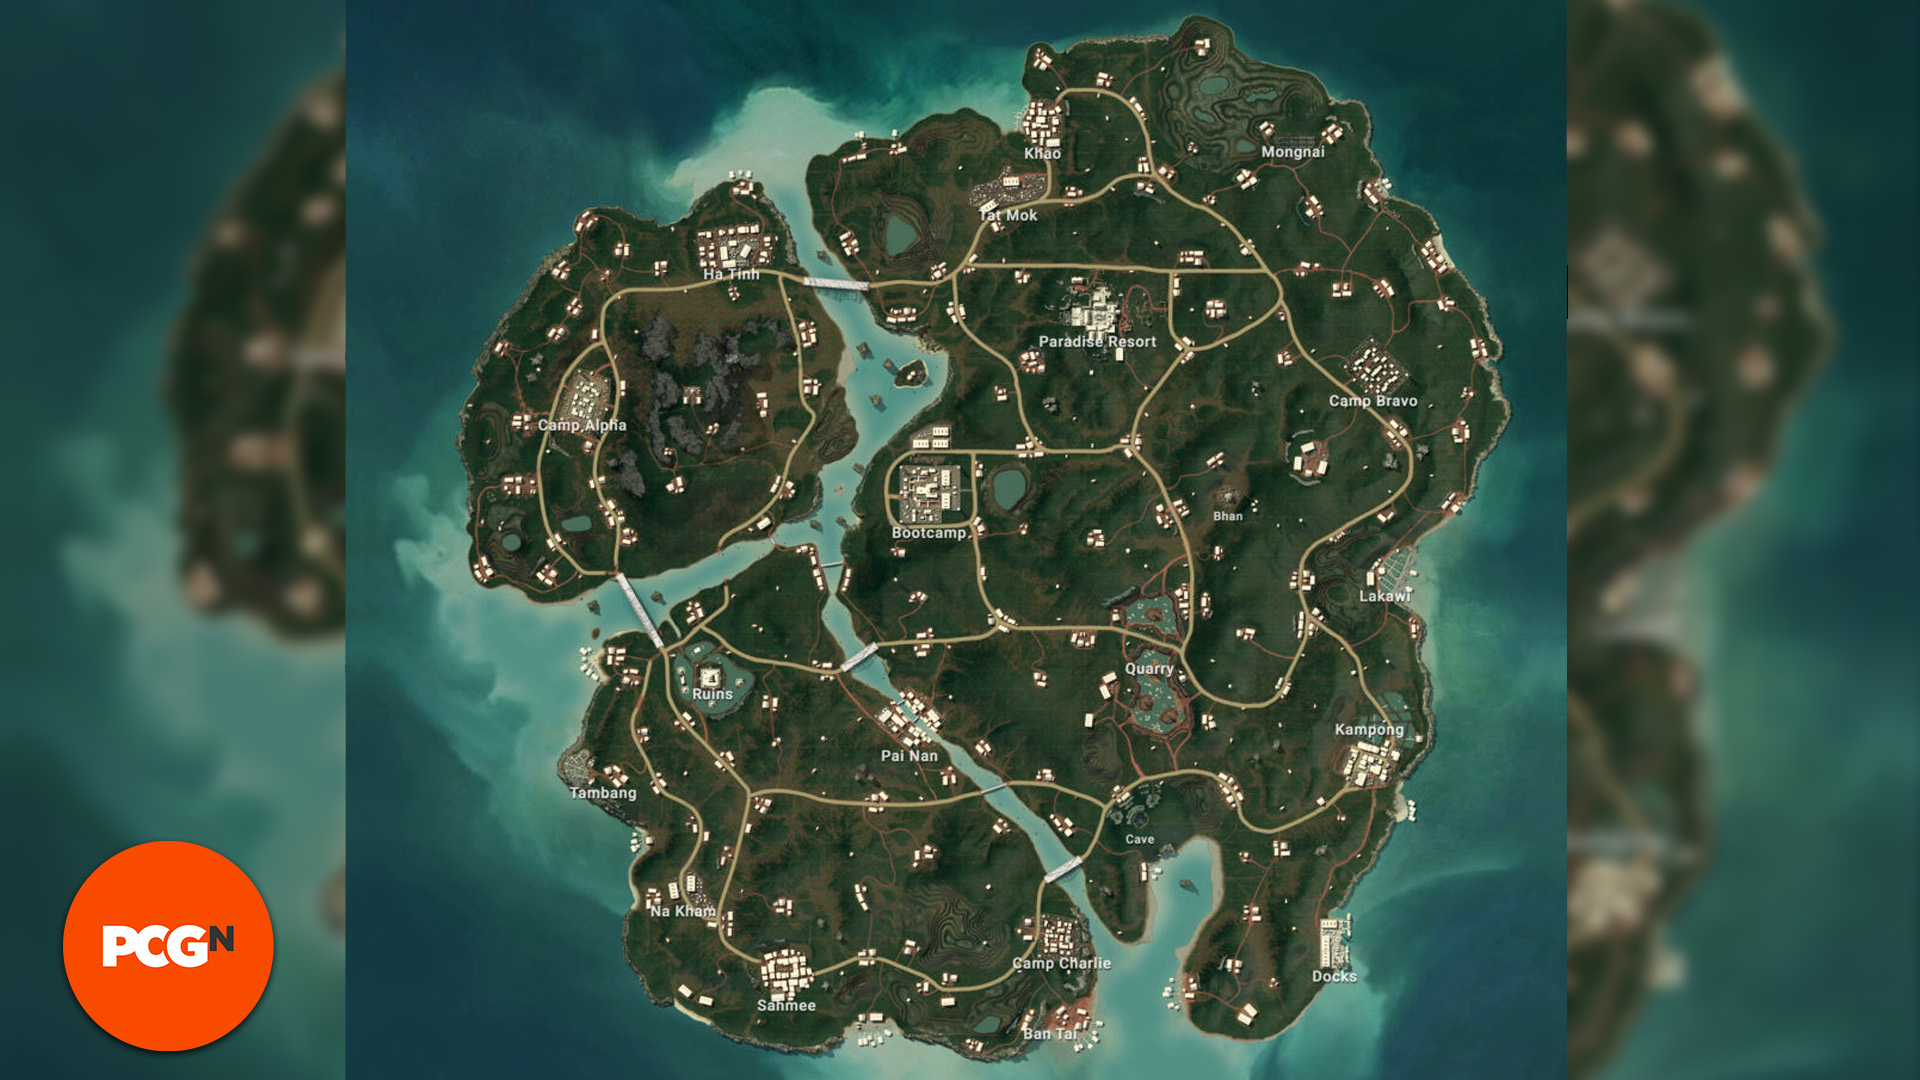 Playerunknowns Battlegrounds PUBG Map: a map view of Sanhok